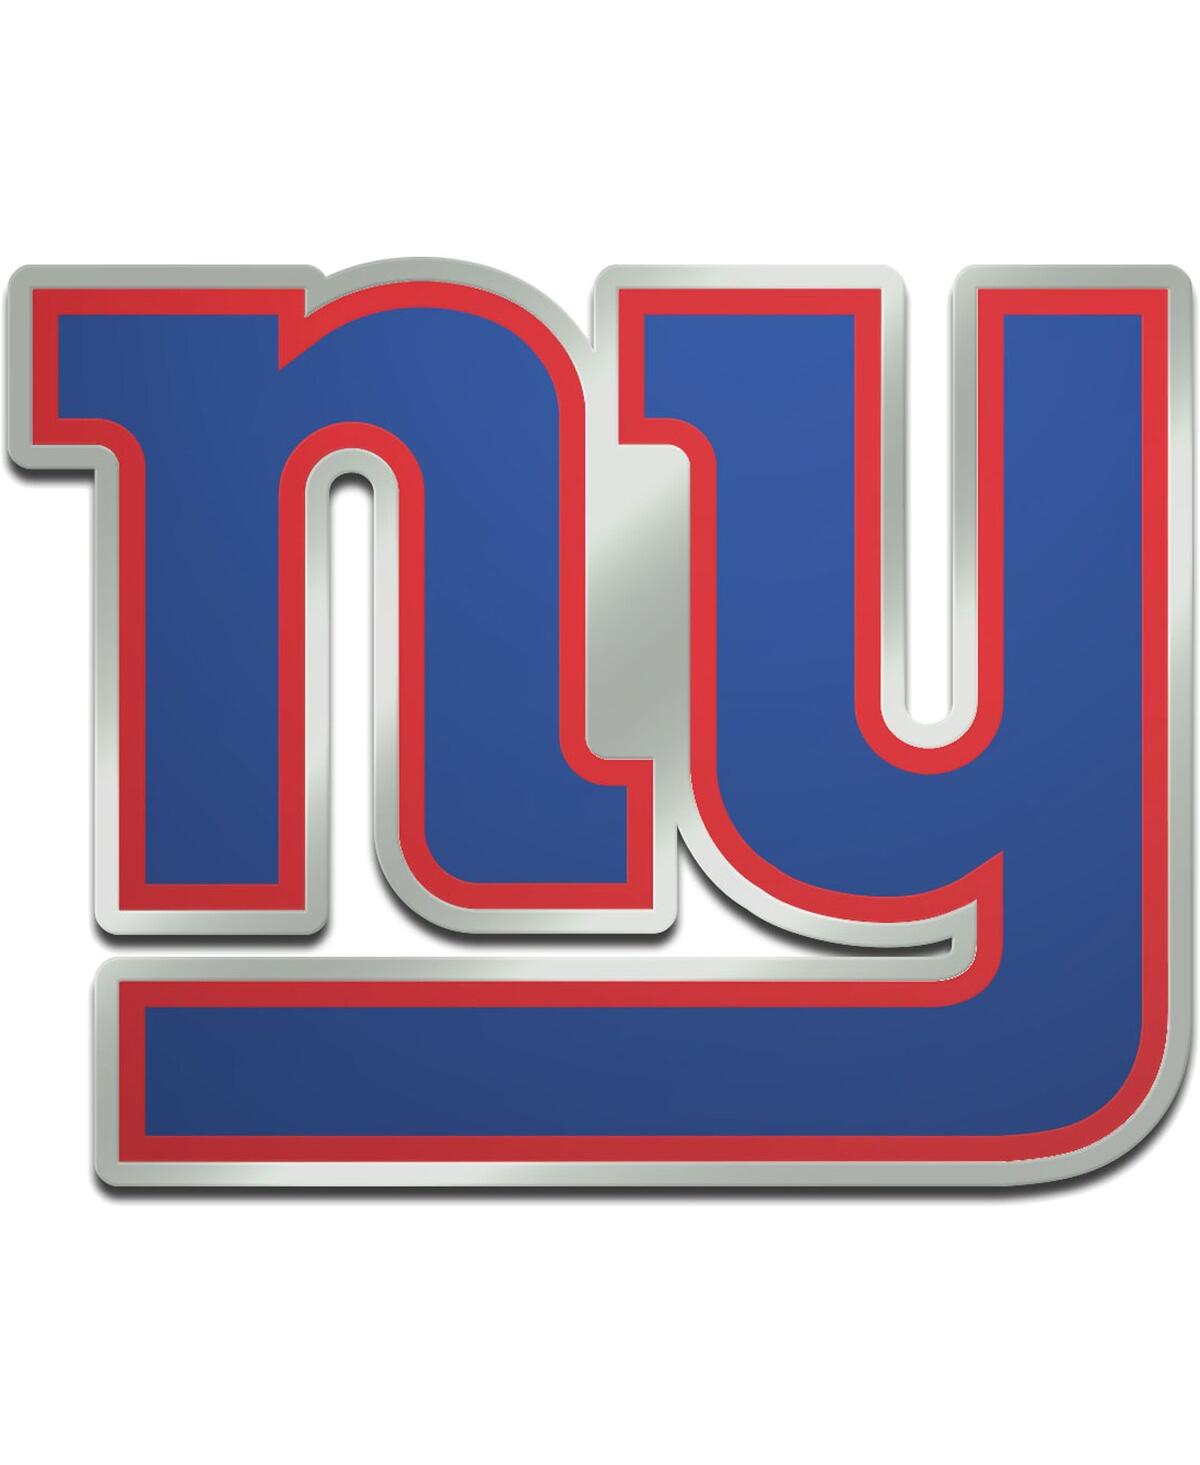 New York Giants Metallic Freeform Logo Auto Emblem - Royal